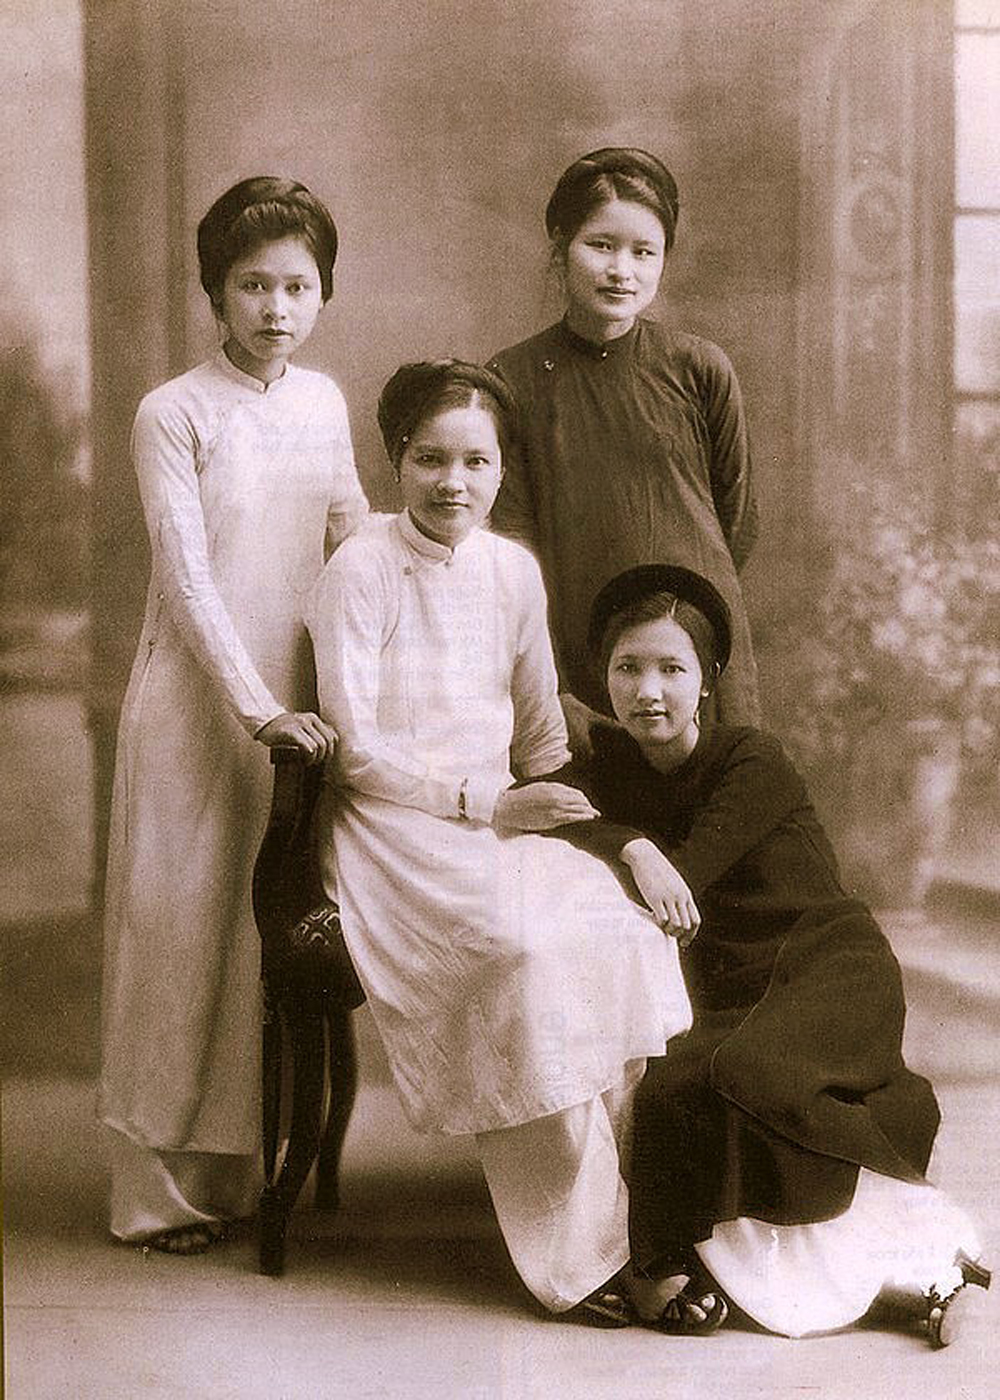 Hãy cùng khám phá hình ảnh về một gia đình phong kiến đầy tình cảm và truyền thống hào hoa. Những giá trị gia đình và những nét đặc trưng của nền văn hóa Việt sẽ được tái hiện lại trong những bức hình đầy sắc màu này.